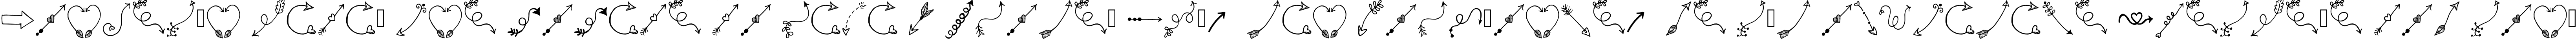 Пример написания шрифтом Tanaestel Doodle Arrows Regular текста на испанском